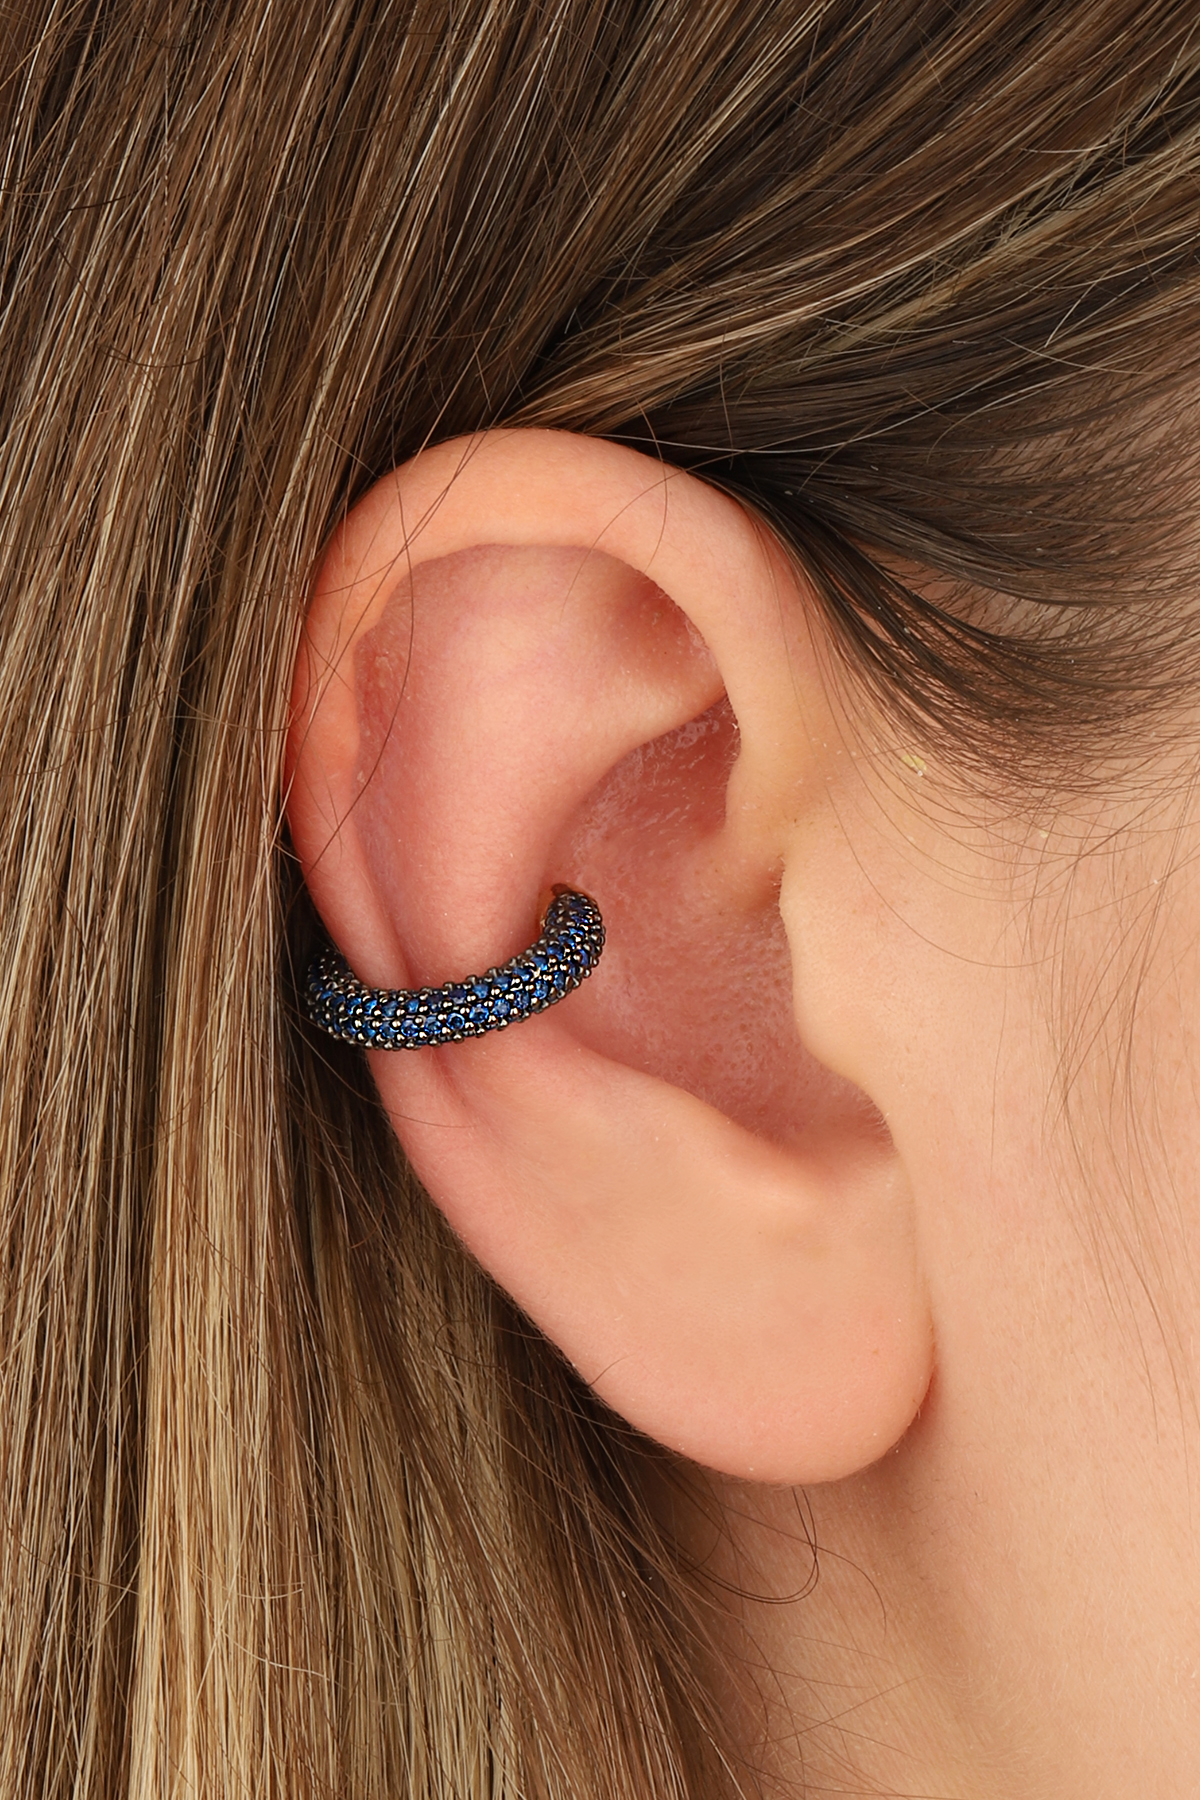 Buy Helix Sun Hoop Earring Silver, Helix Earring, Helix Piercing, Cartilage  Hoops, Cartilage Hoop Earing, Ear Piercing Online in India - Etsy